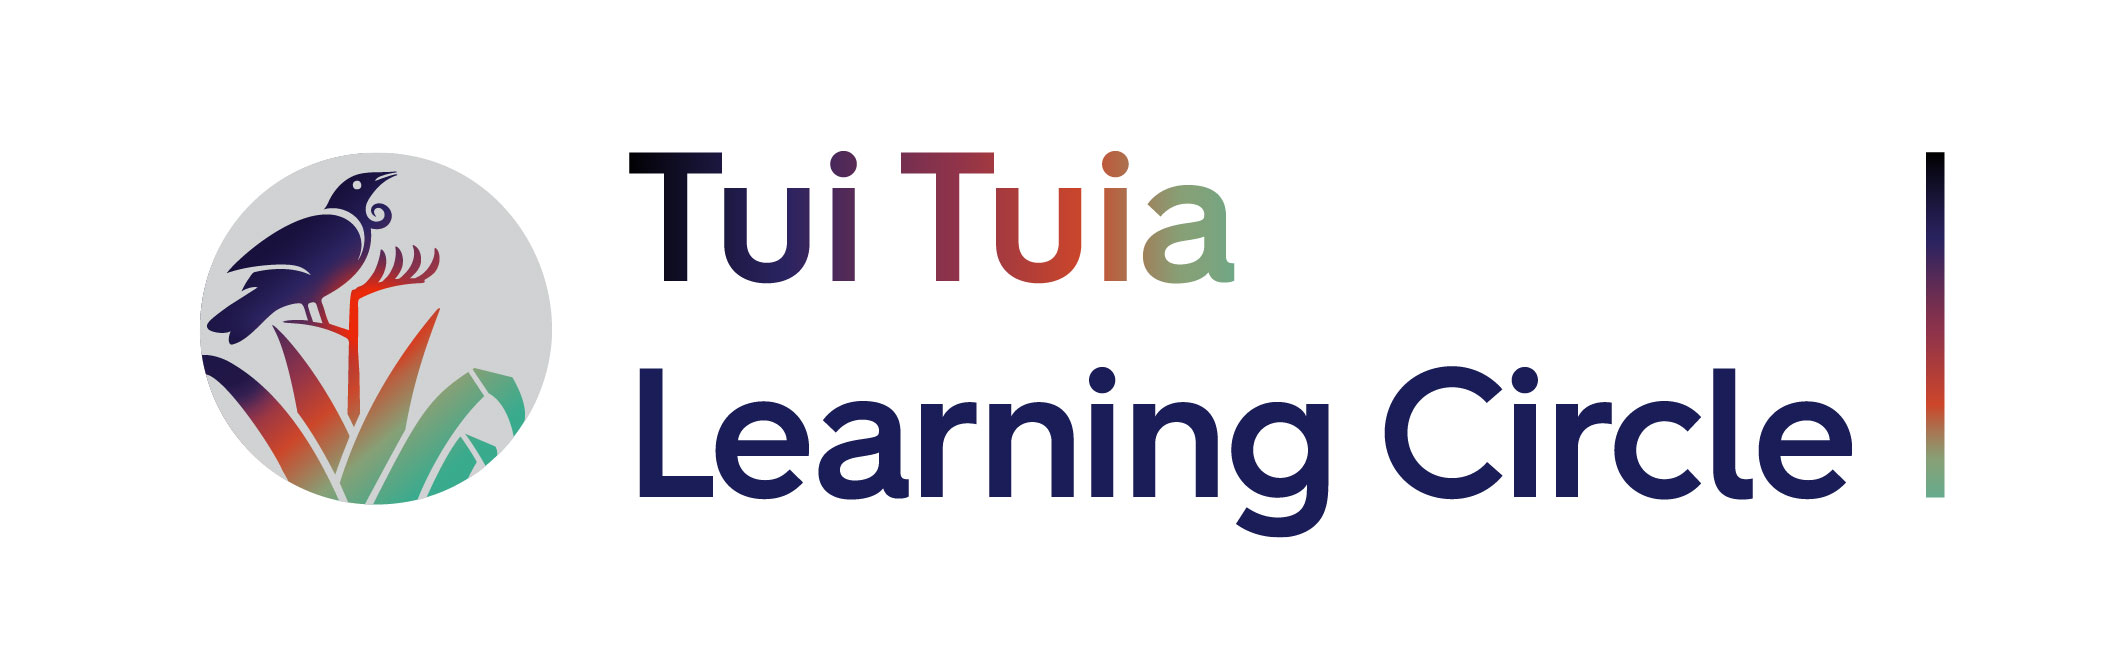 Tui-Tuia-Learning-Circle--Horizontal-Colours.jpg